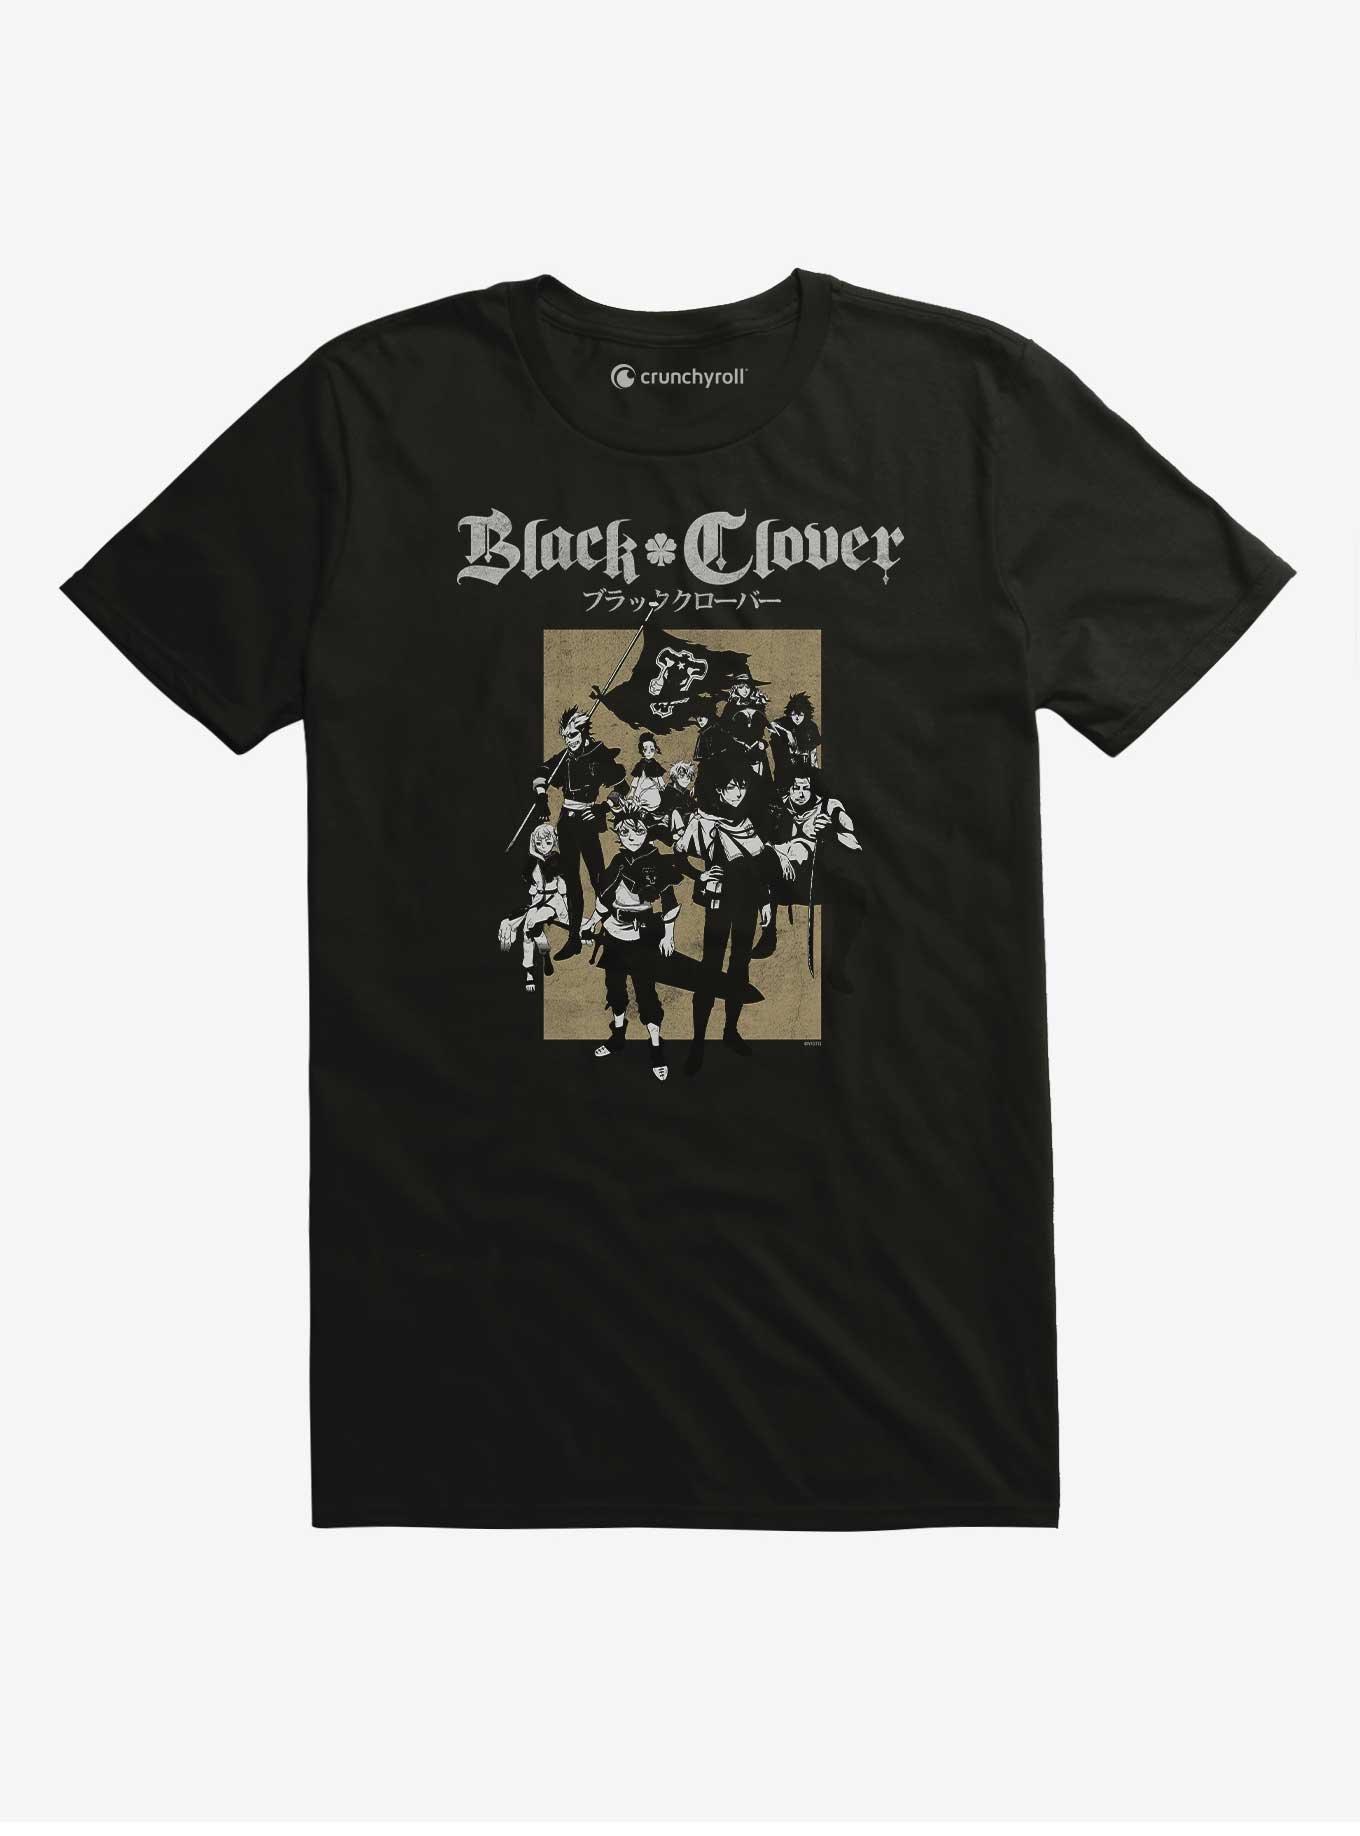 Black Clover Group Black T Shirt, BLACK, hi-res